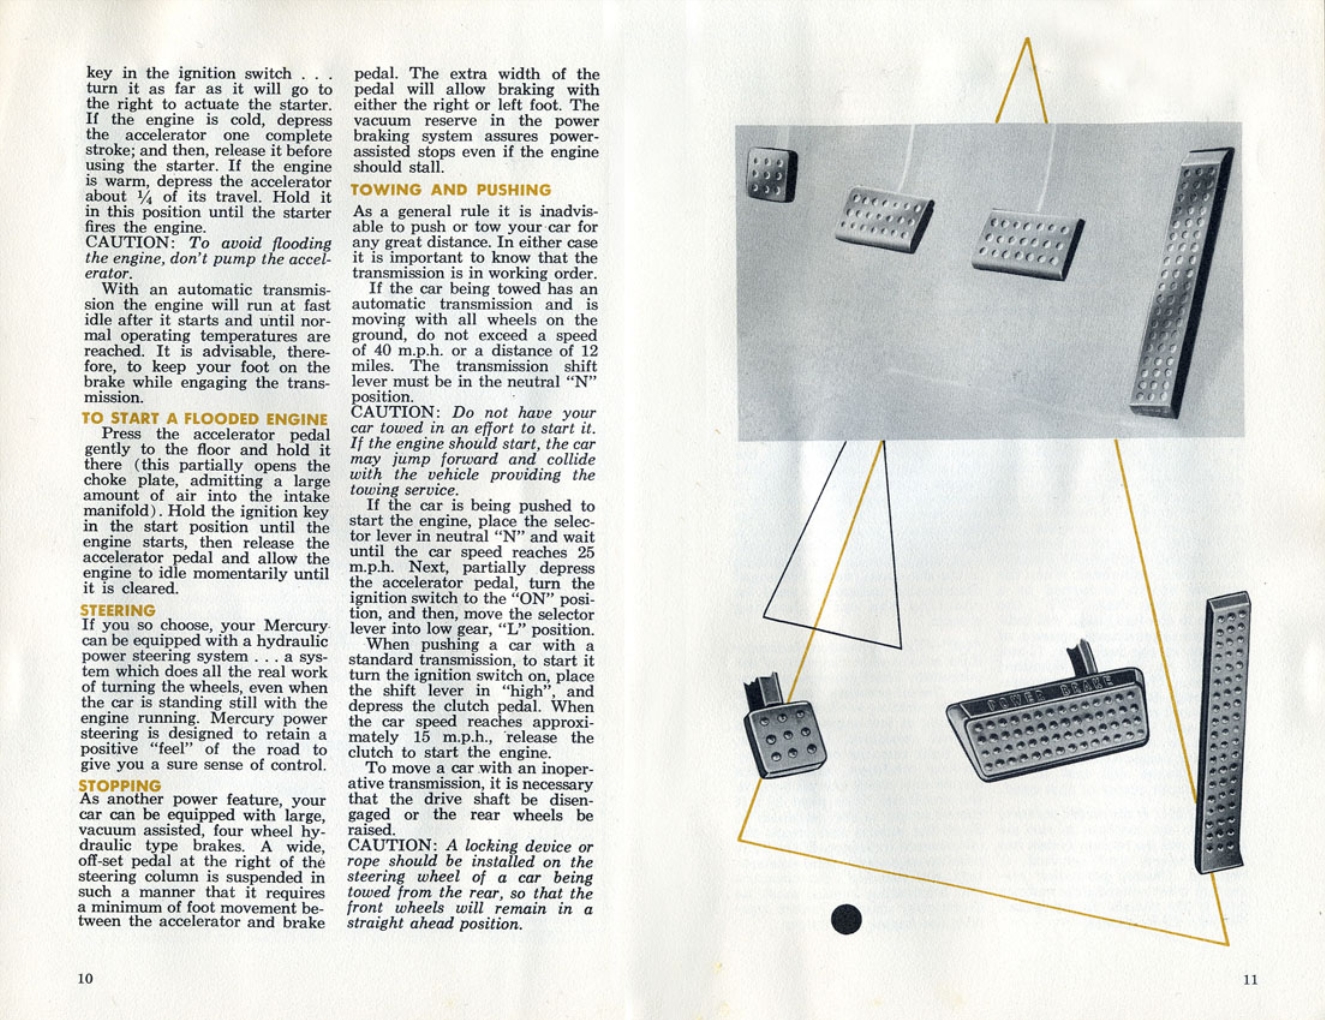 1960_Mercury_Manual-10-11